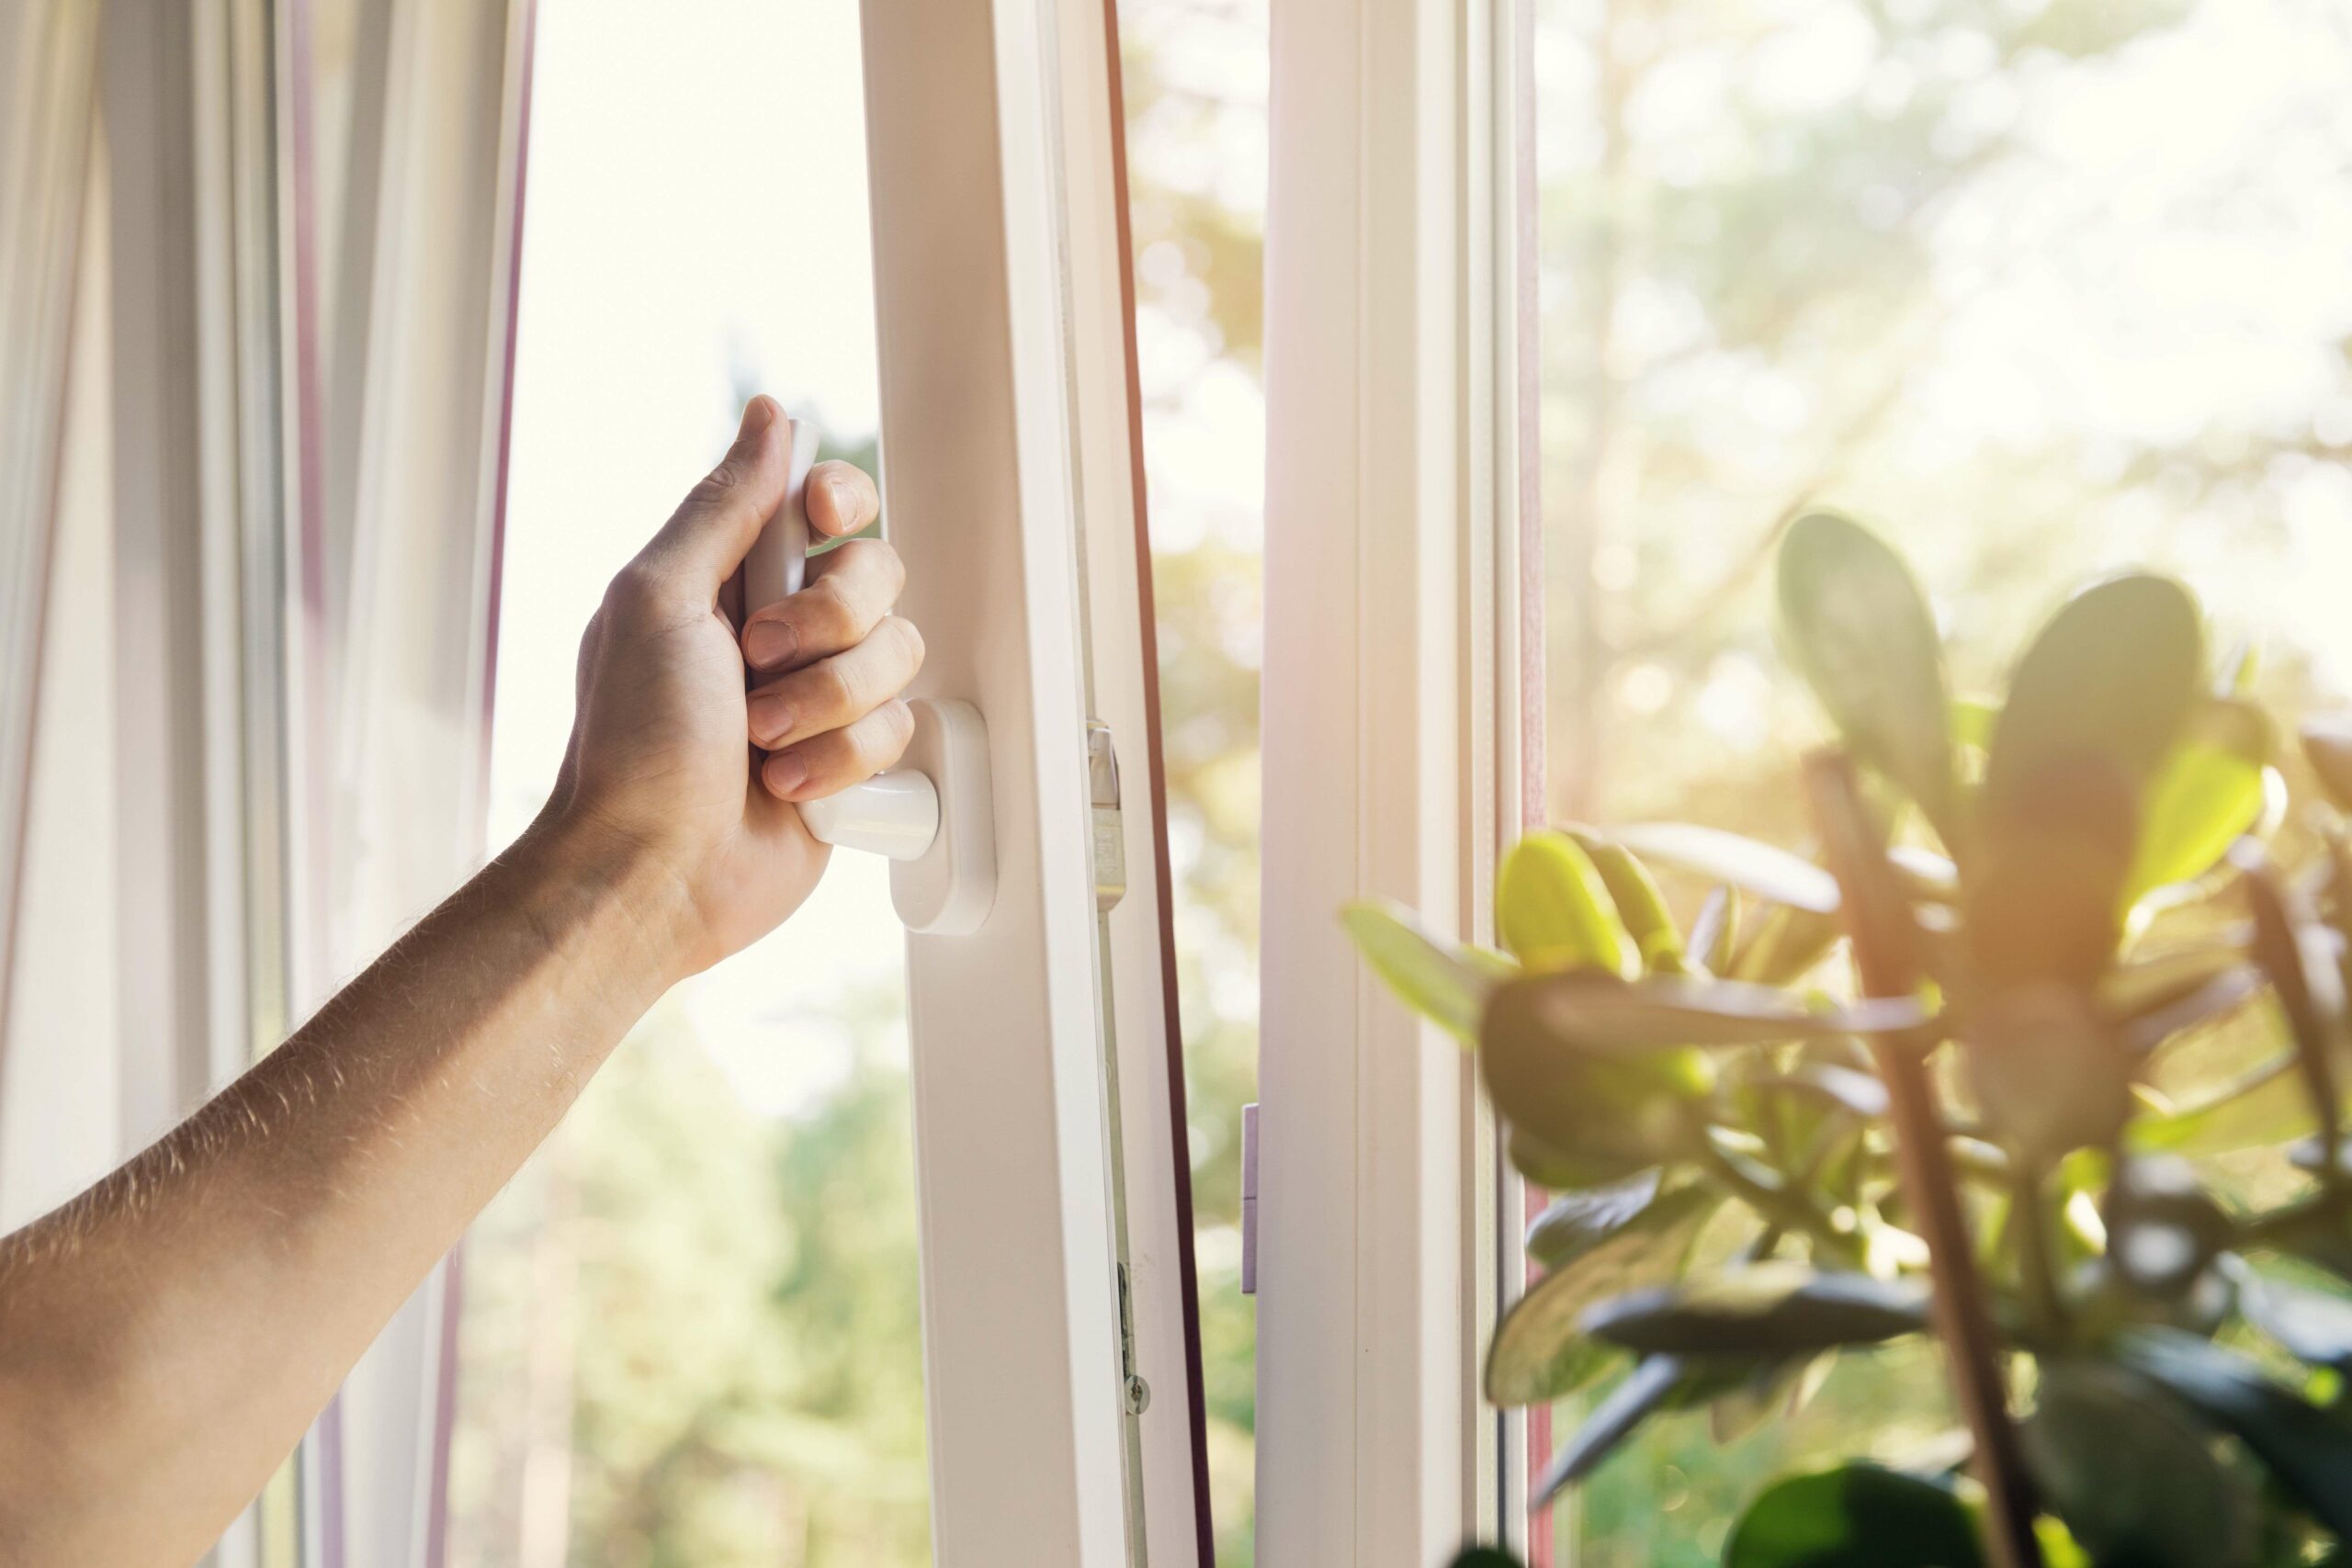 Ventilar adequadament i mantenir tancades finestres i portes ens pot ajudar a estalviar molt en calefacció i aire condicionat.